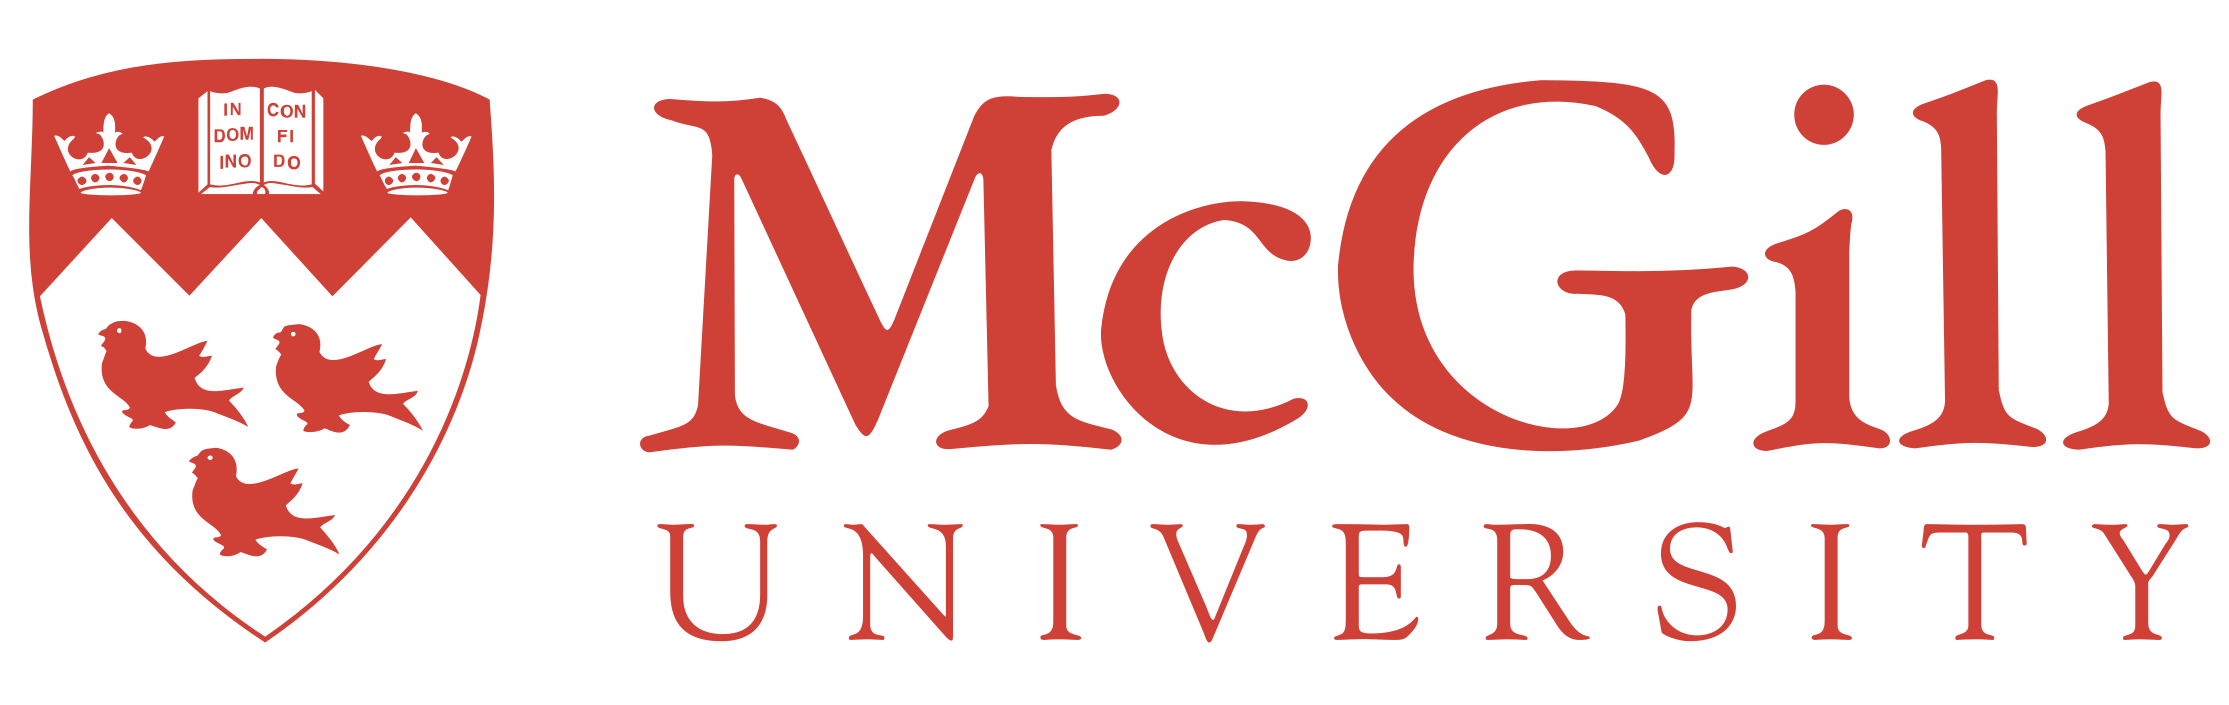 McGill Università Canada logo